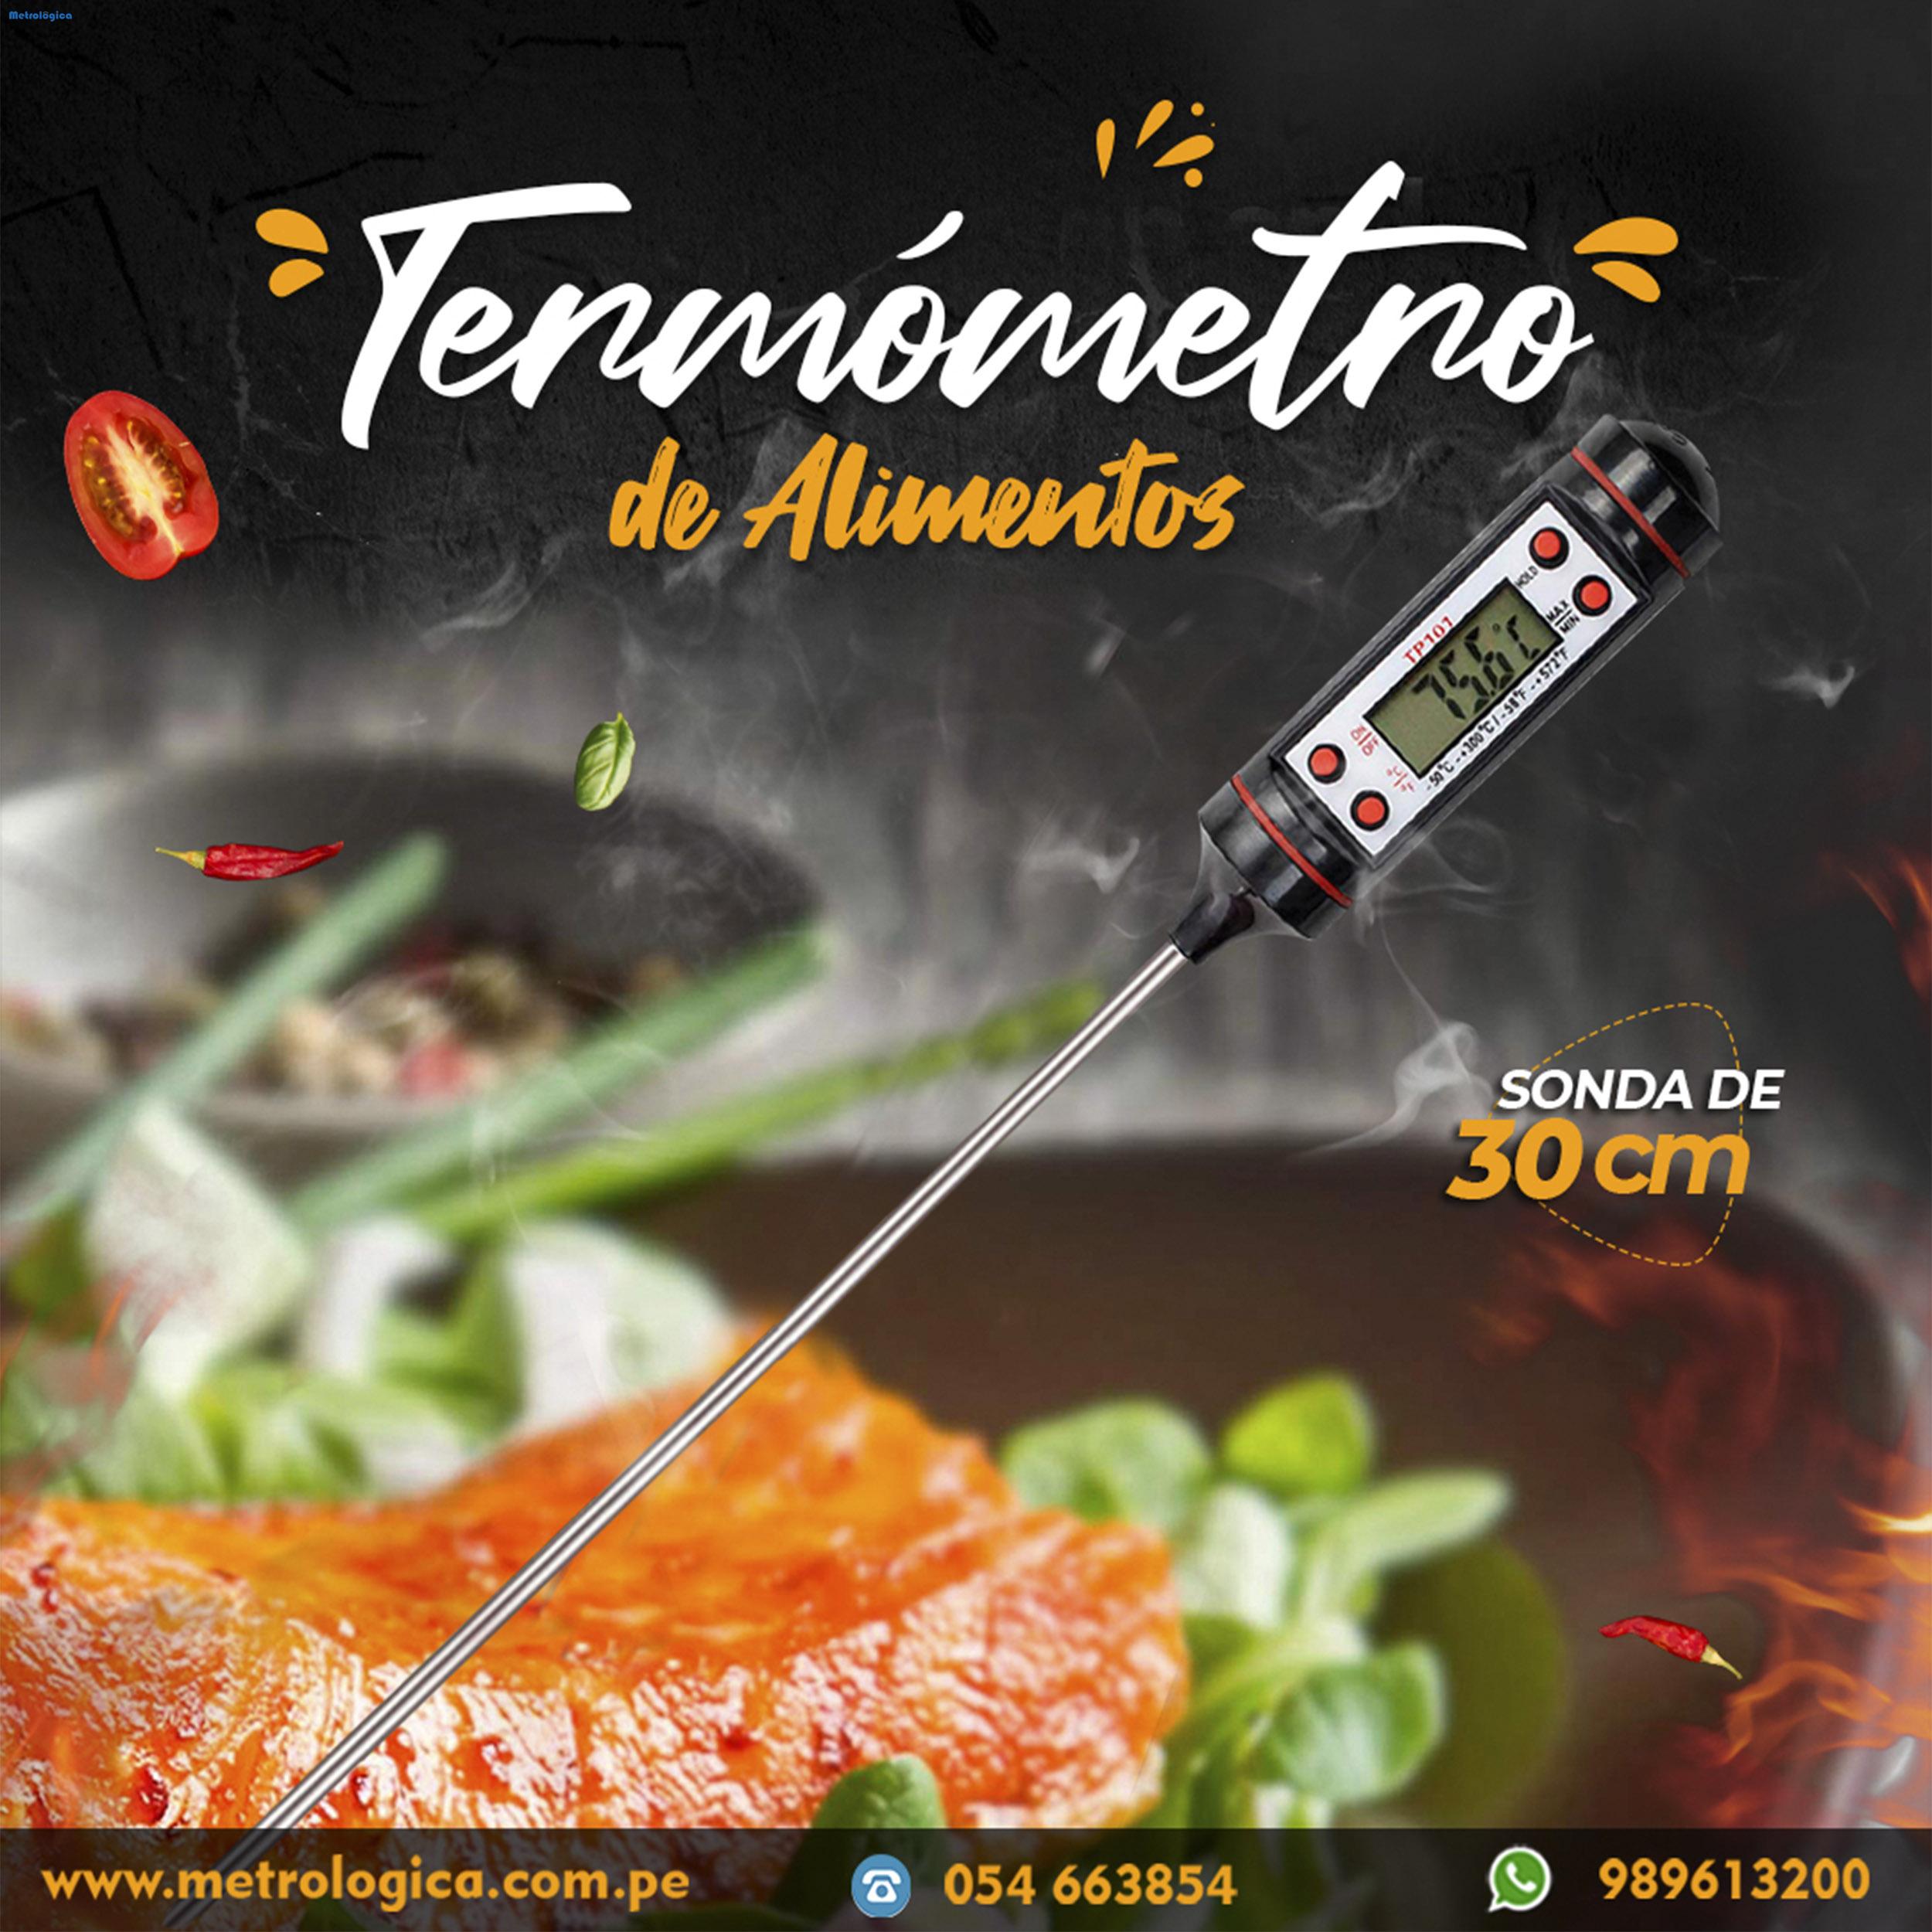 Termometro punzon para alimentos y | Cremoladeras, Refresqueras, Topografia, Laboratorio, Alimentaria, Balanzas, Maquina de Kebab, Tamices